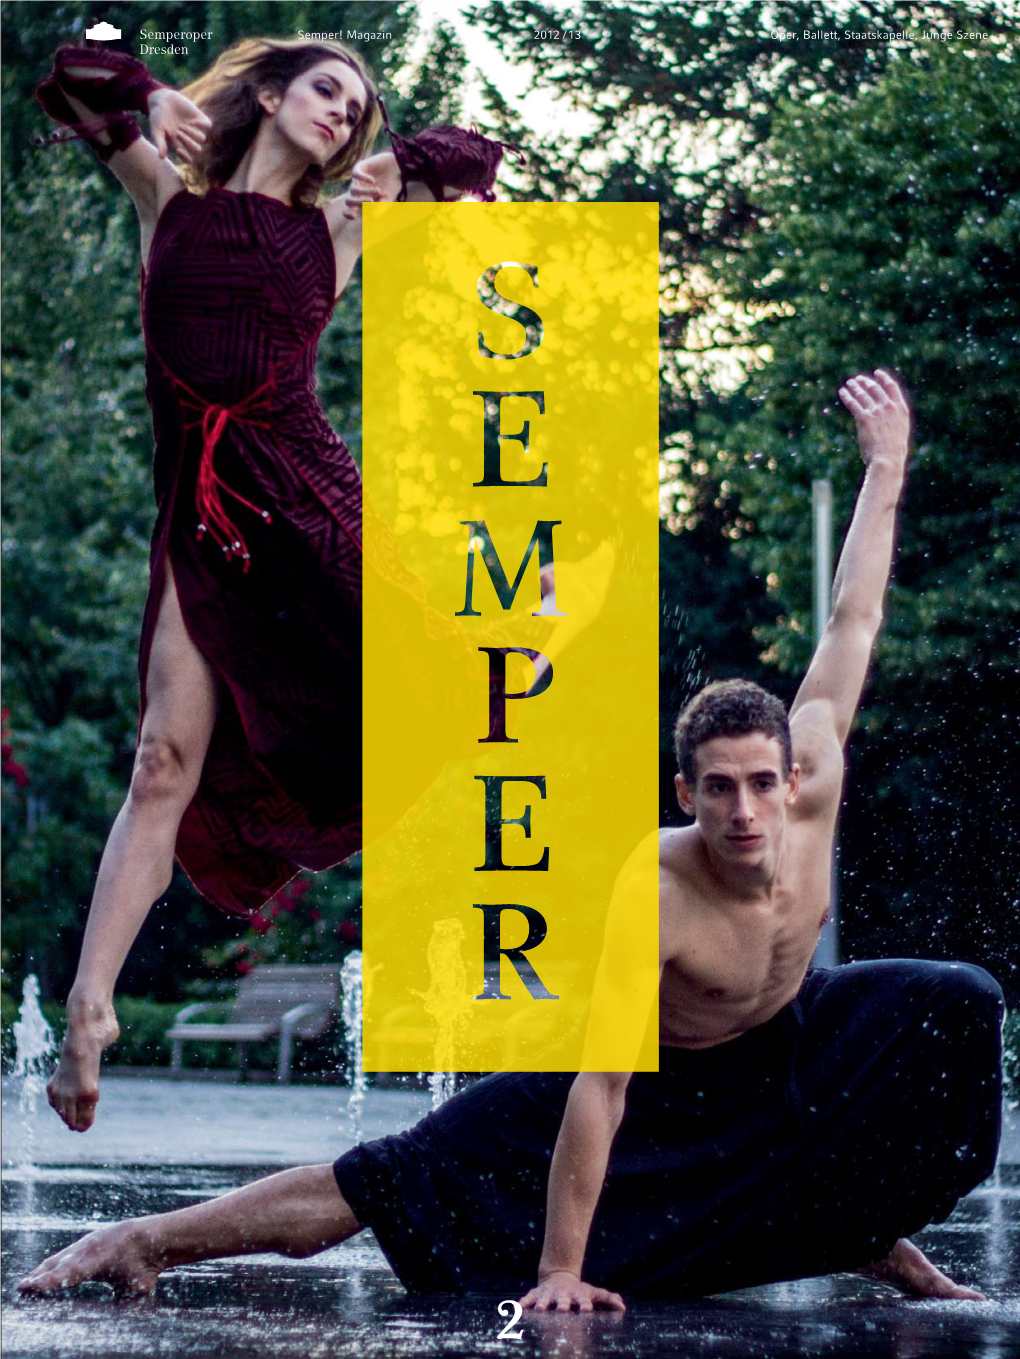 Oper, Ballett, Staatskapelle, Junge Szene 2012 / 13 Semper! Magazin